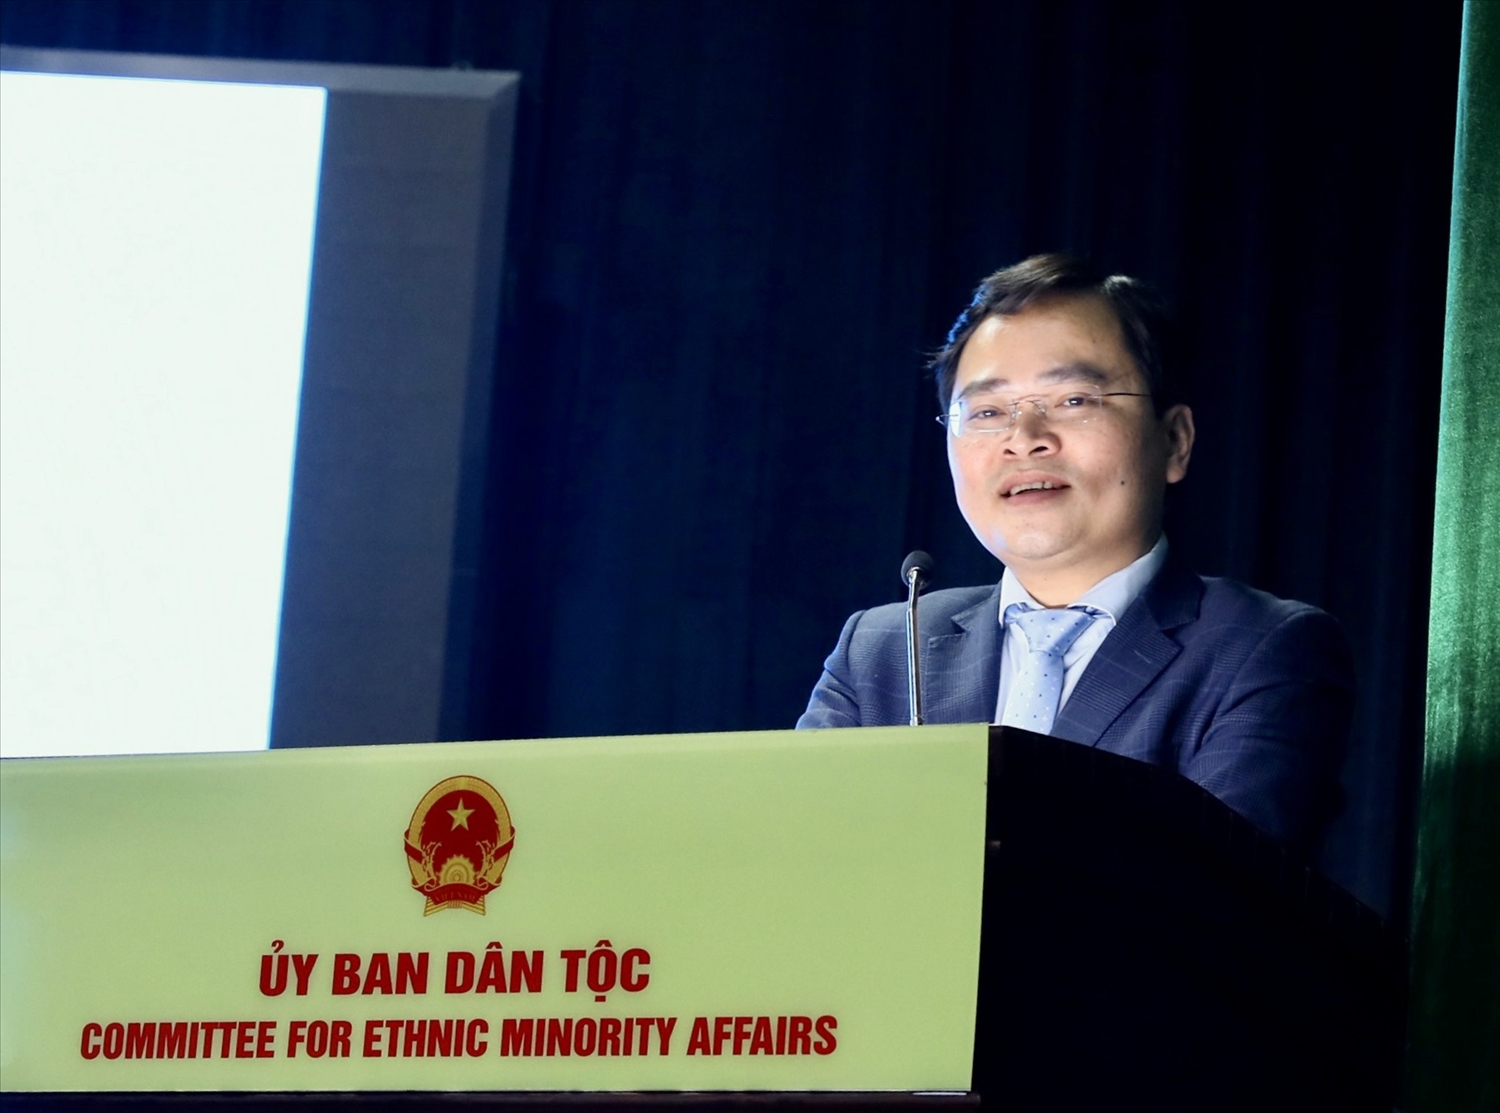 Bí thư Thứ nhất Trung ương Đoàn TNCS Hồ Chí Minh Nguyễn Anh Tuấn phát biểu tại buổi Lễ